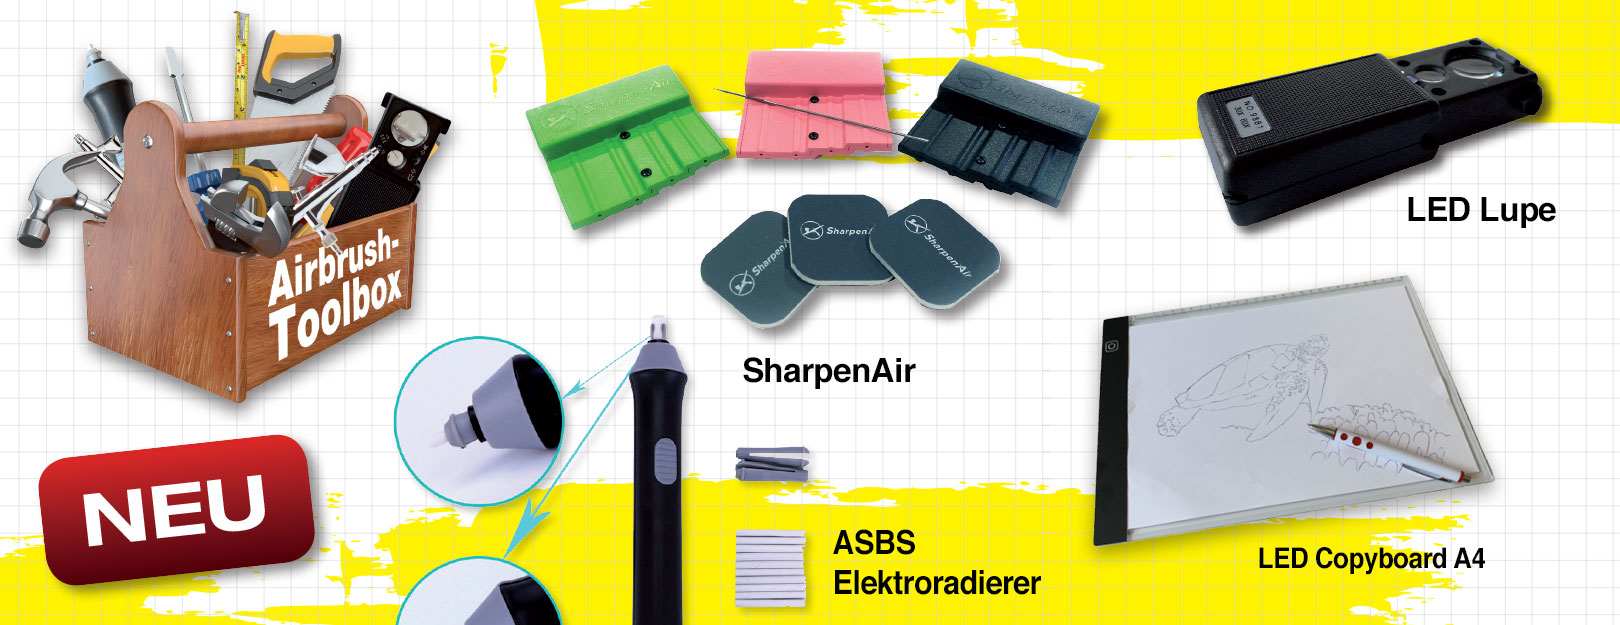 Neu im ASBS Online-Shop: Praktisches, nützliches und ausgesuchtes Airbrush-Zubehör, das (noch) nicht jeder hat!